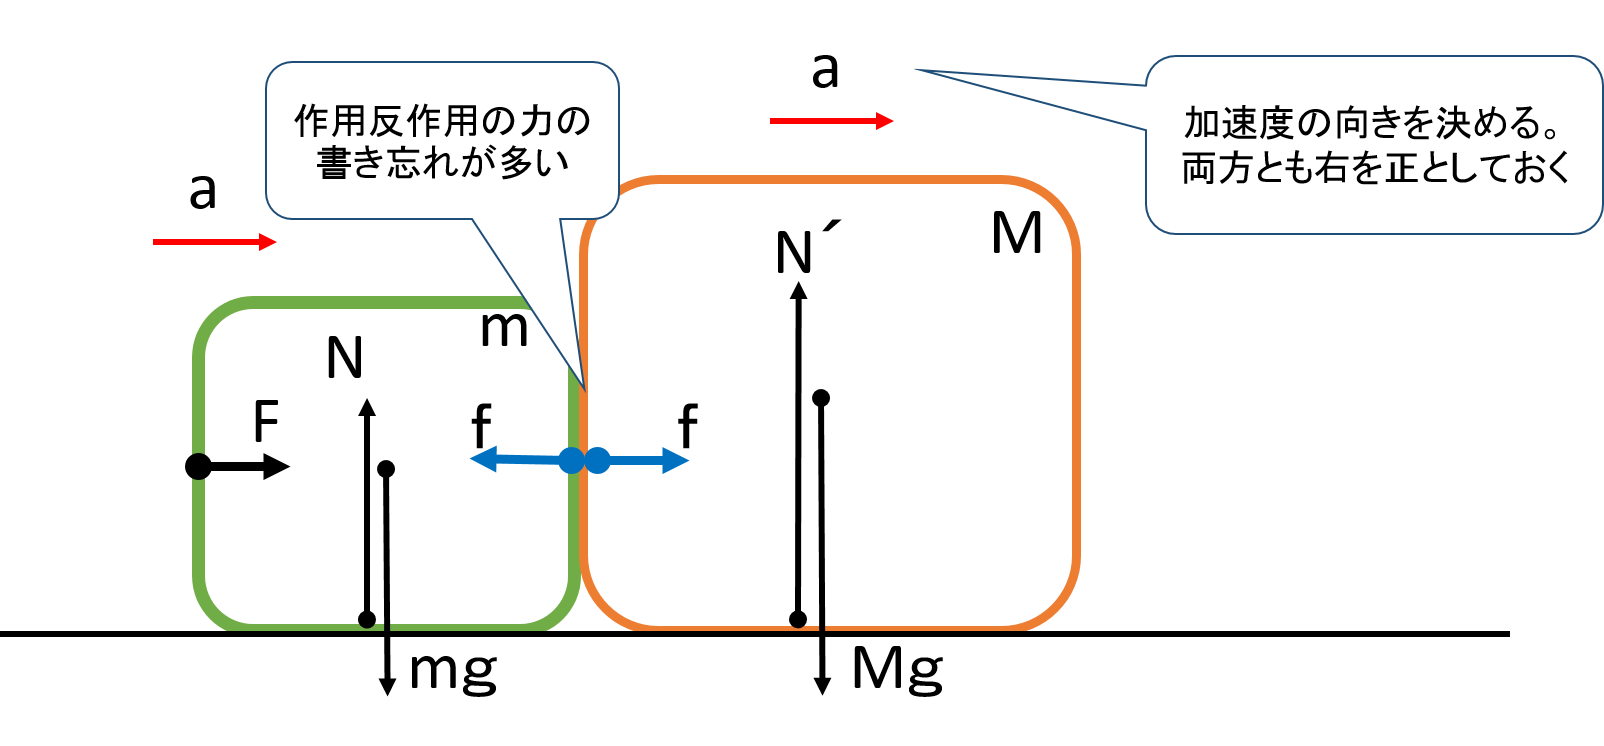 物理基礎 運動方程式 応用編 ２物体の解き方は手順を守れば解ける 平川ブログ